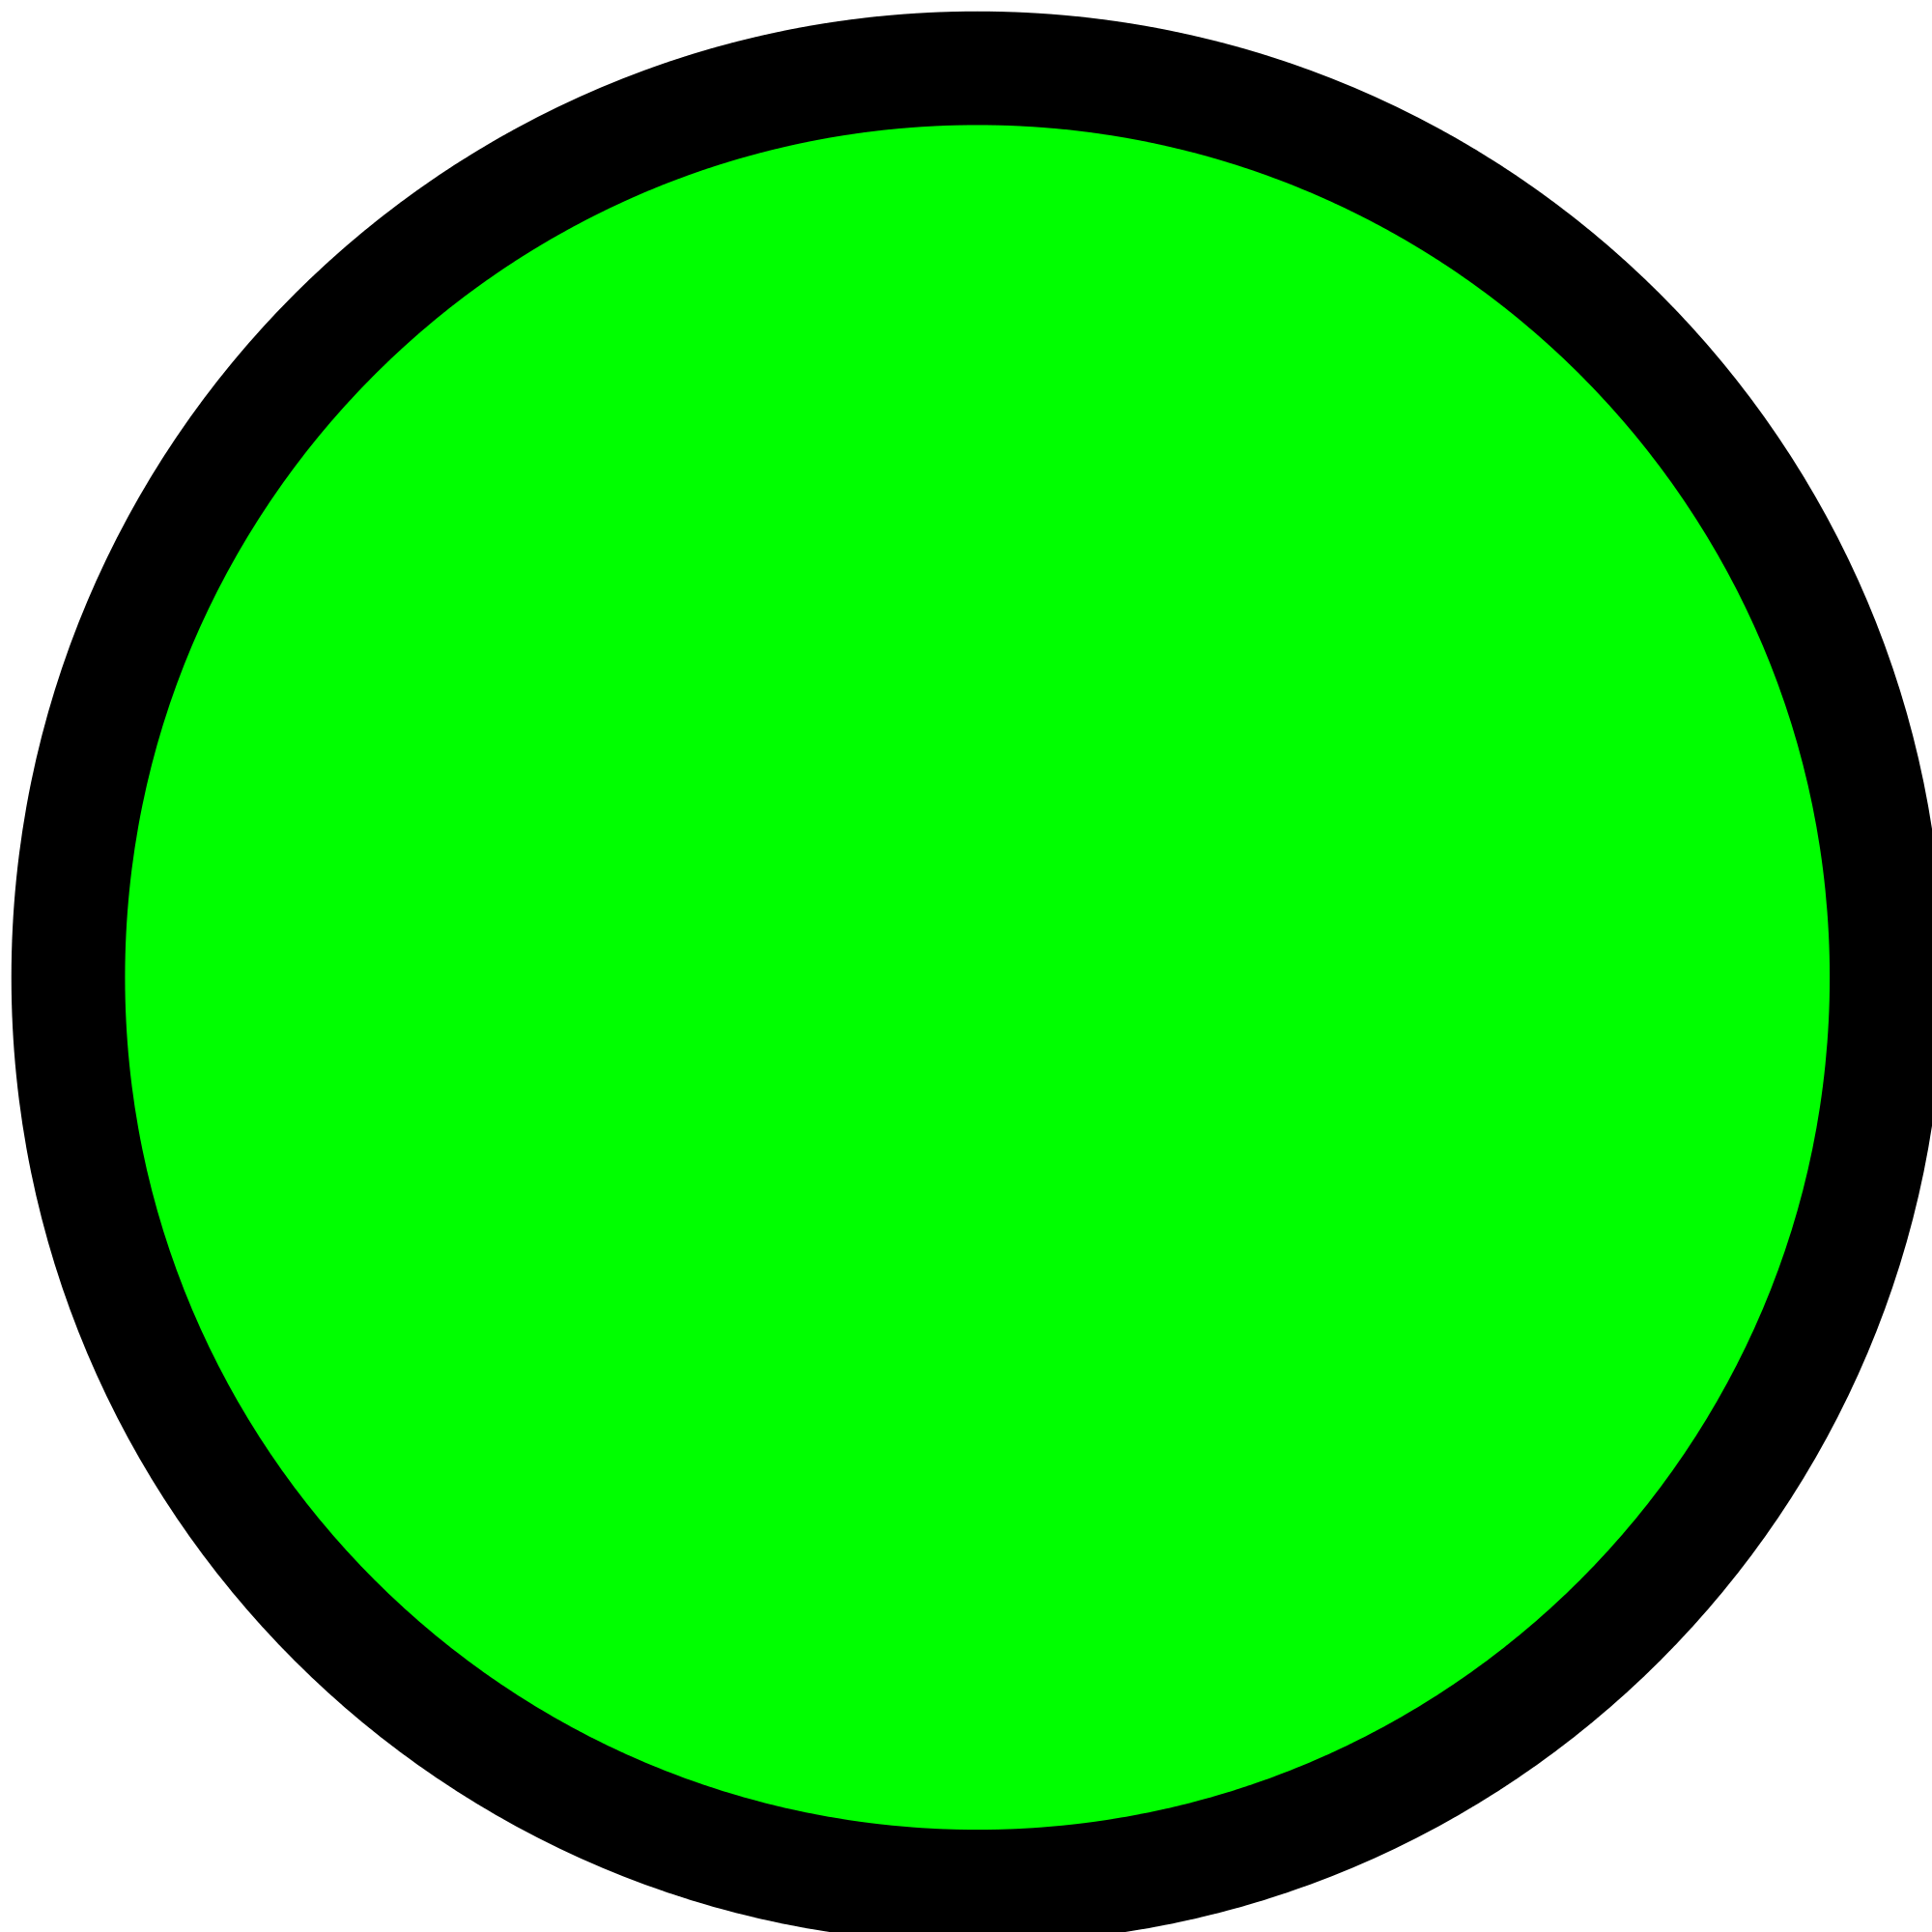 Black and Green Circular Logo - Circle Green.svg